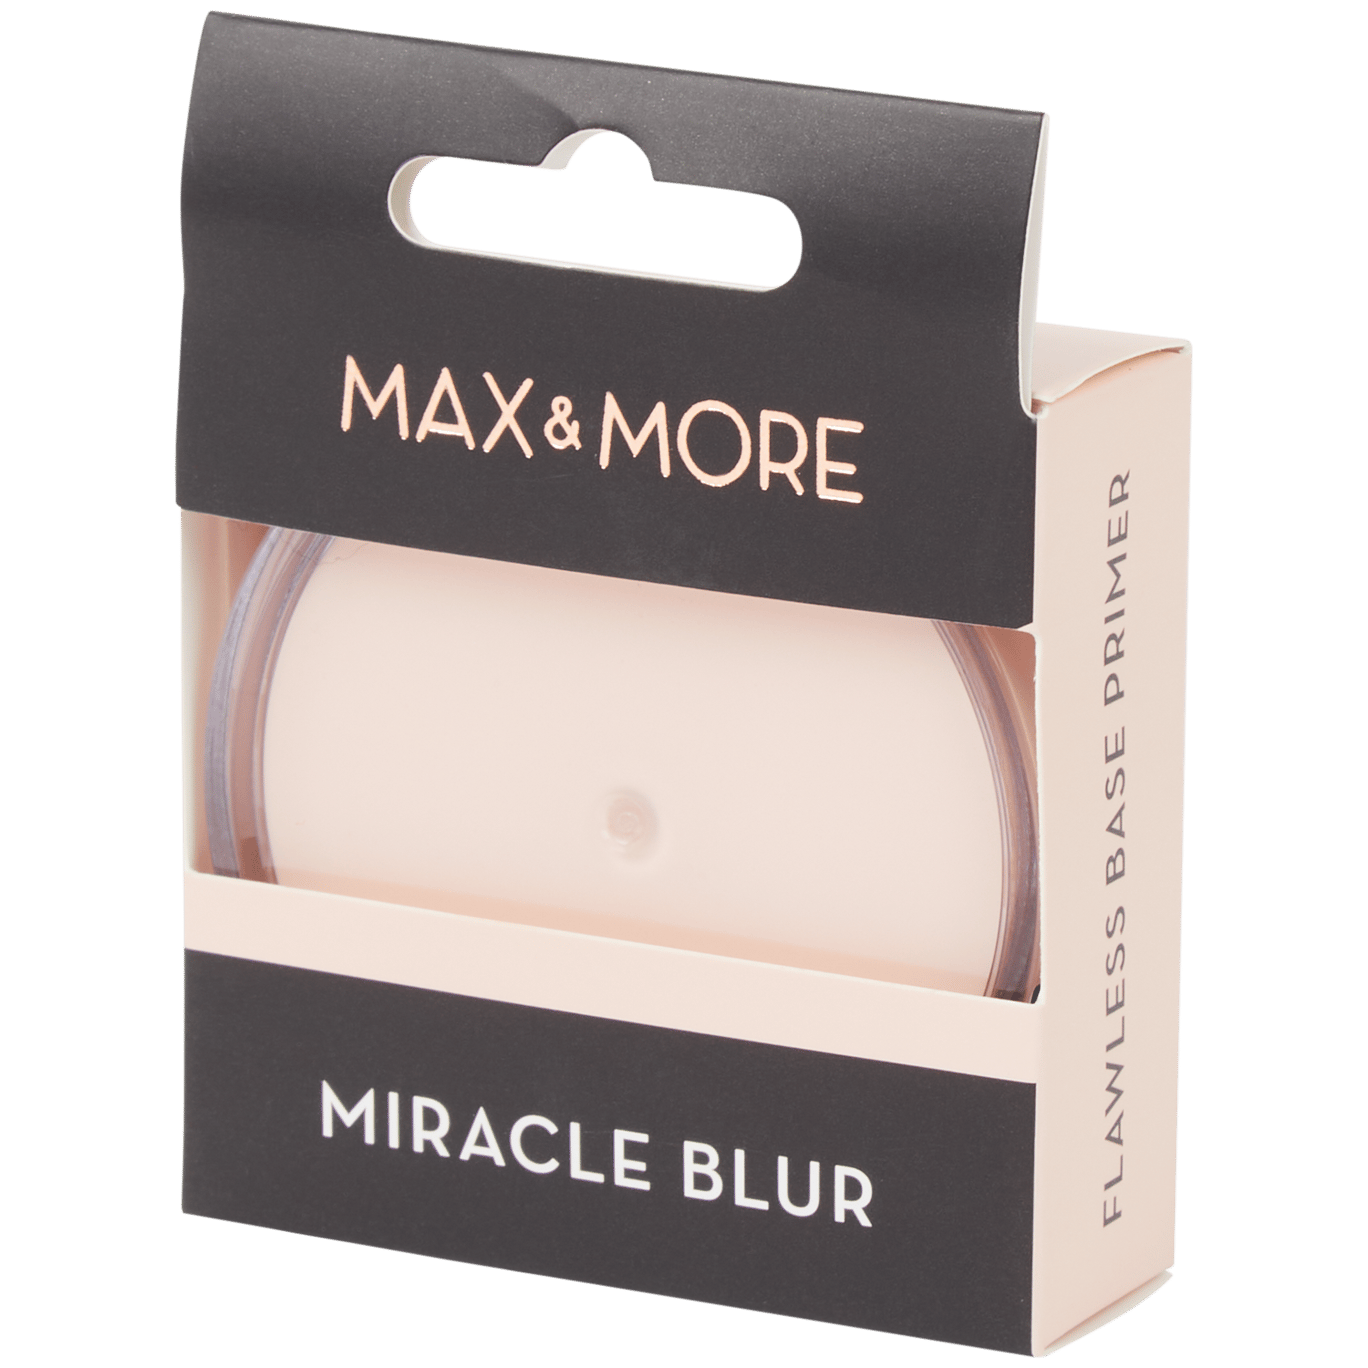 Primer Max & More Miracle Blur